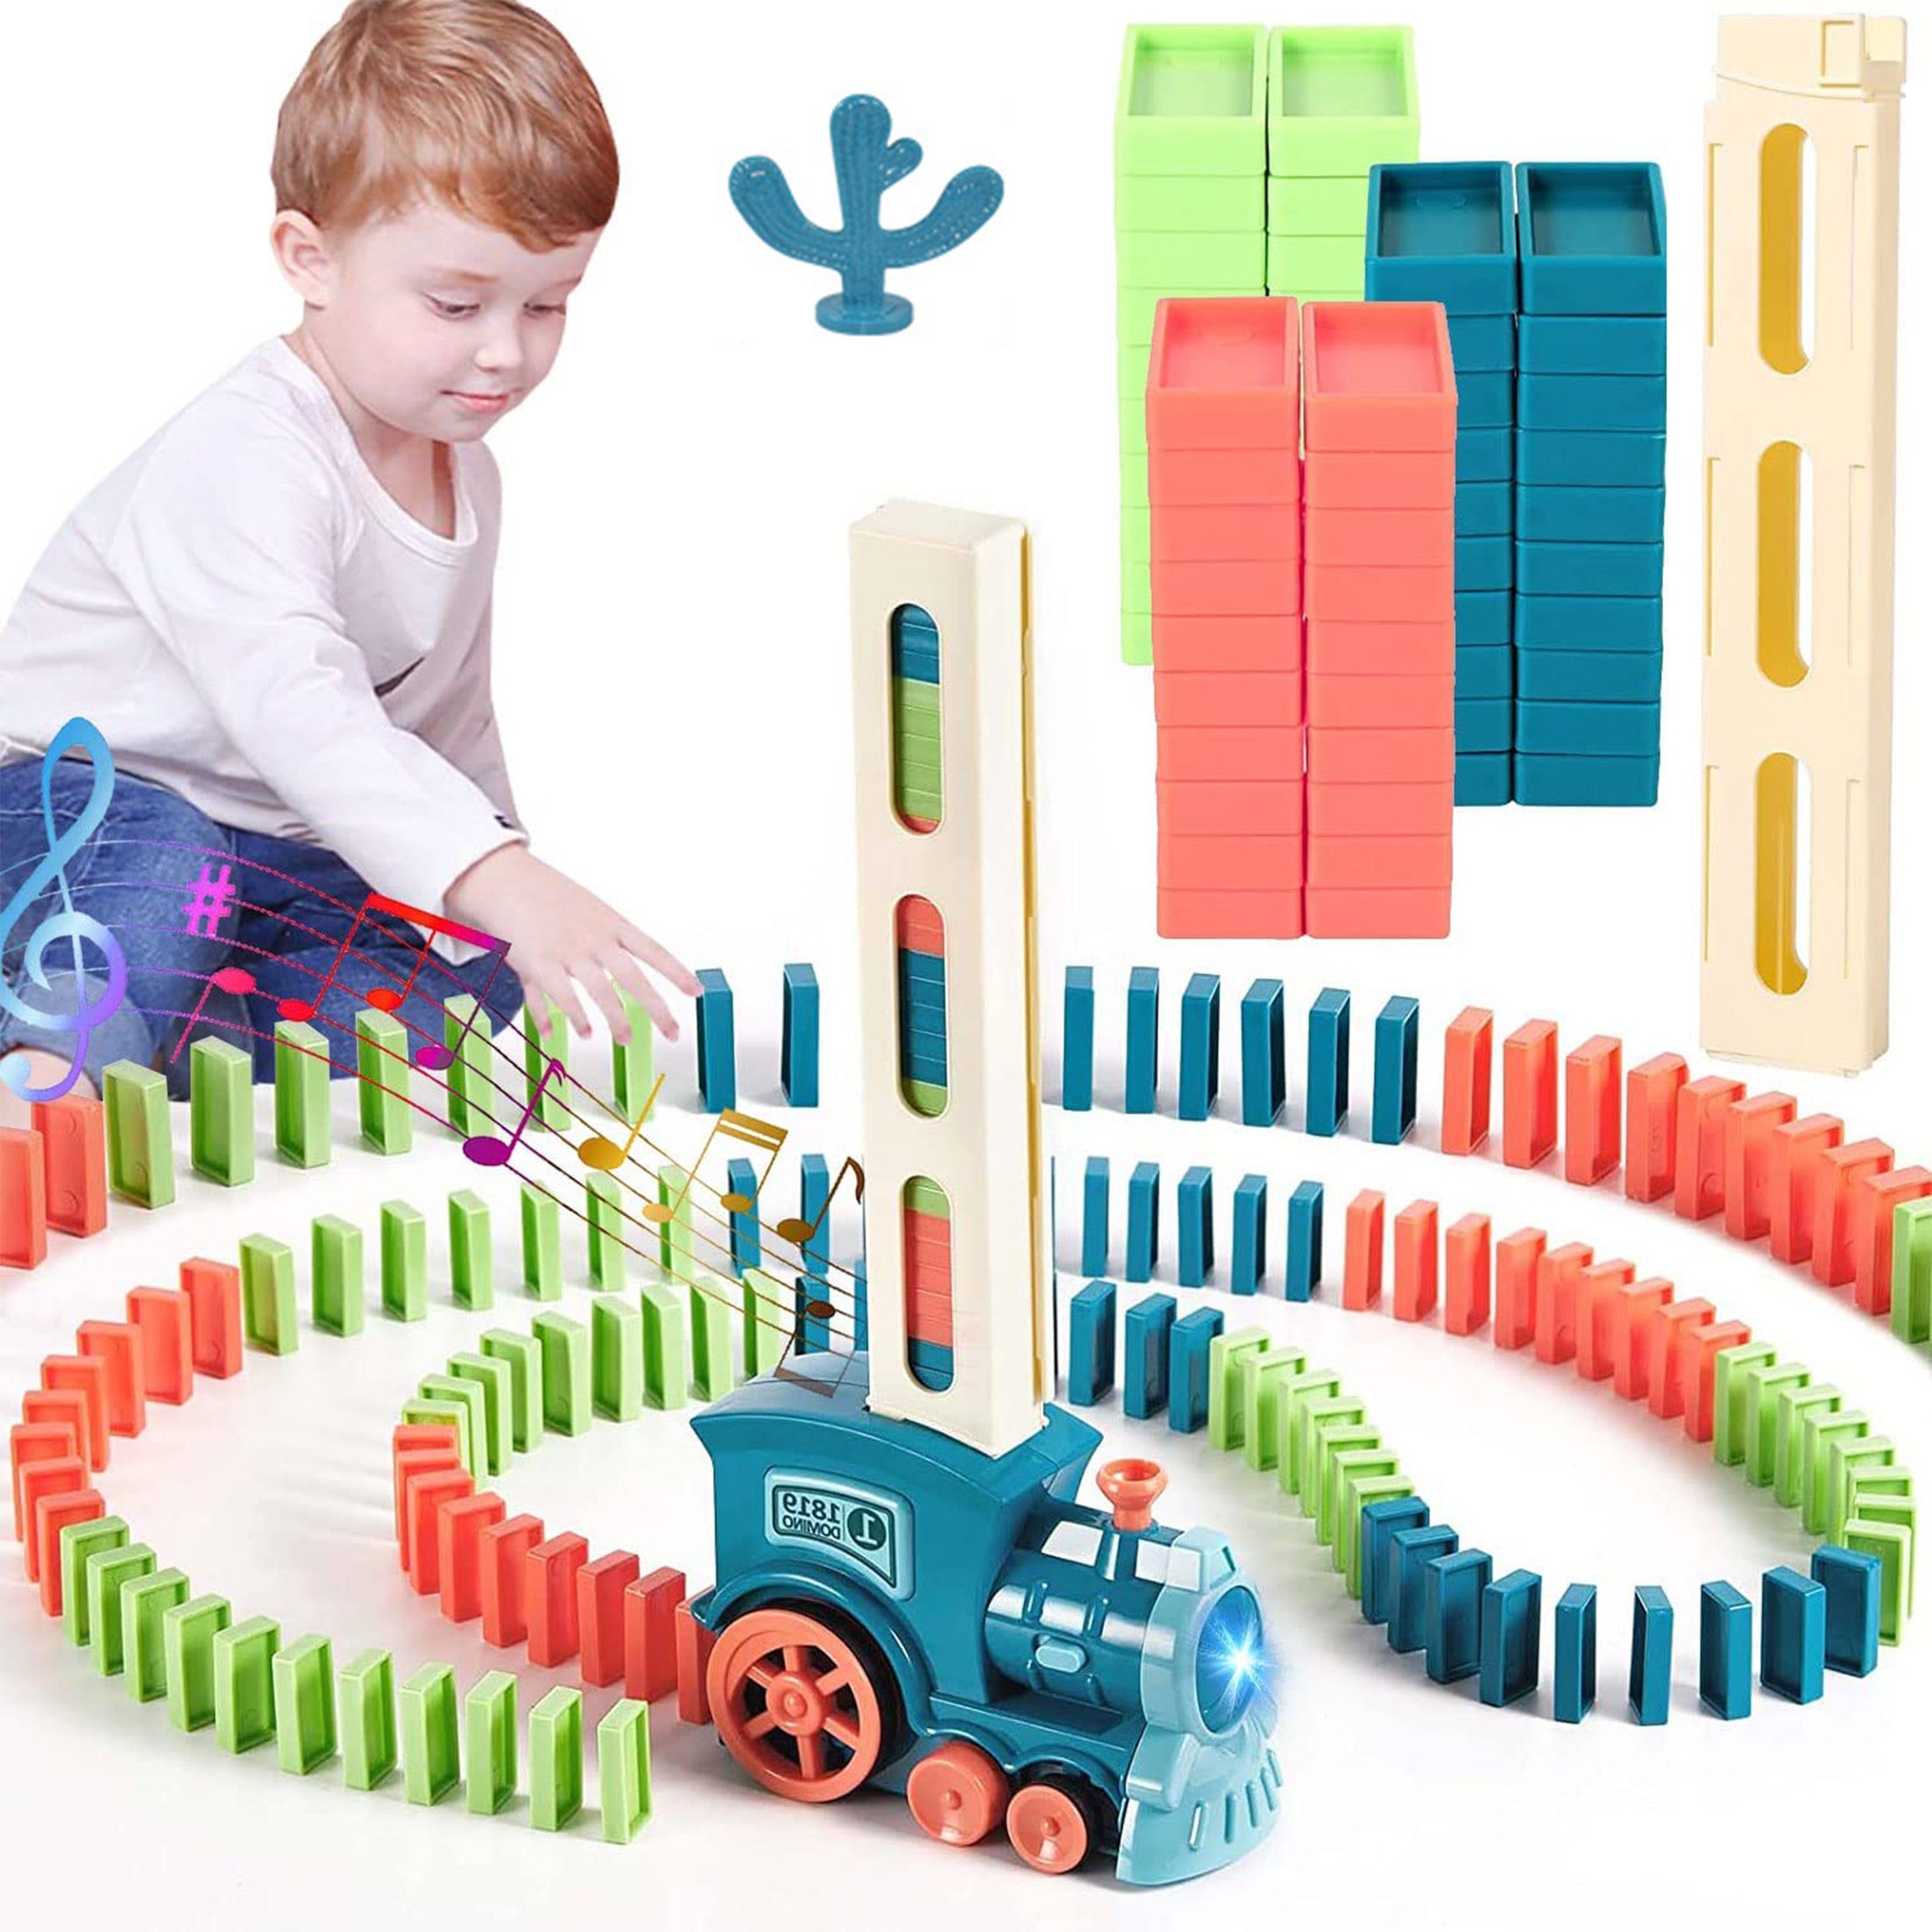 Kind Ja Lernspielzeug Domino-Spielzeugset, Stapelspielzeug, automatischer Domino-Zug,Schiene, Lernspielzeug für Kinder, 60 pcs Domino-Zug mit Lichtern und Musik